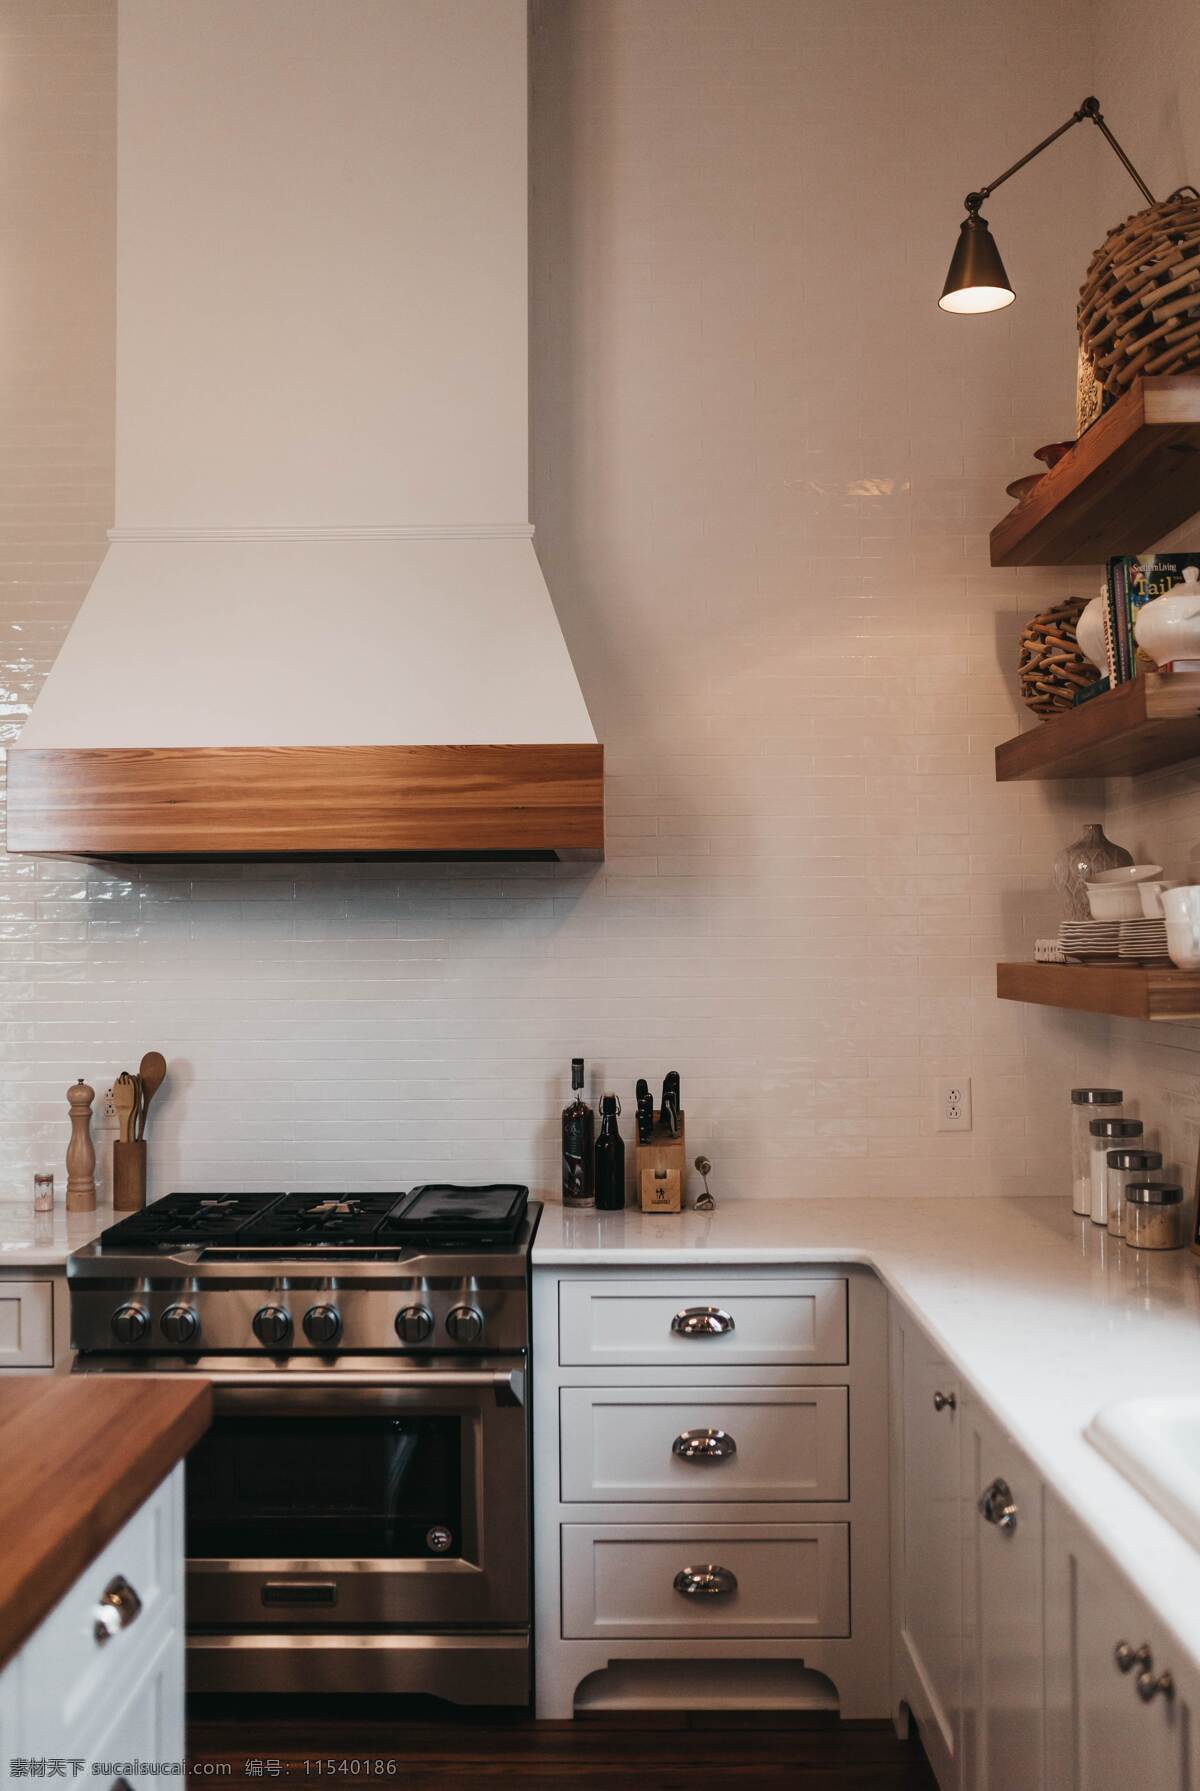 厨房一角 厨房 角落 木质橱柜 家具生活 装饰设计 建筑园林 室内摄影